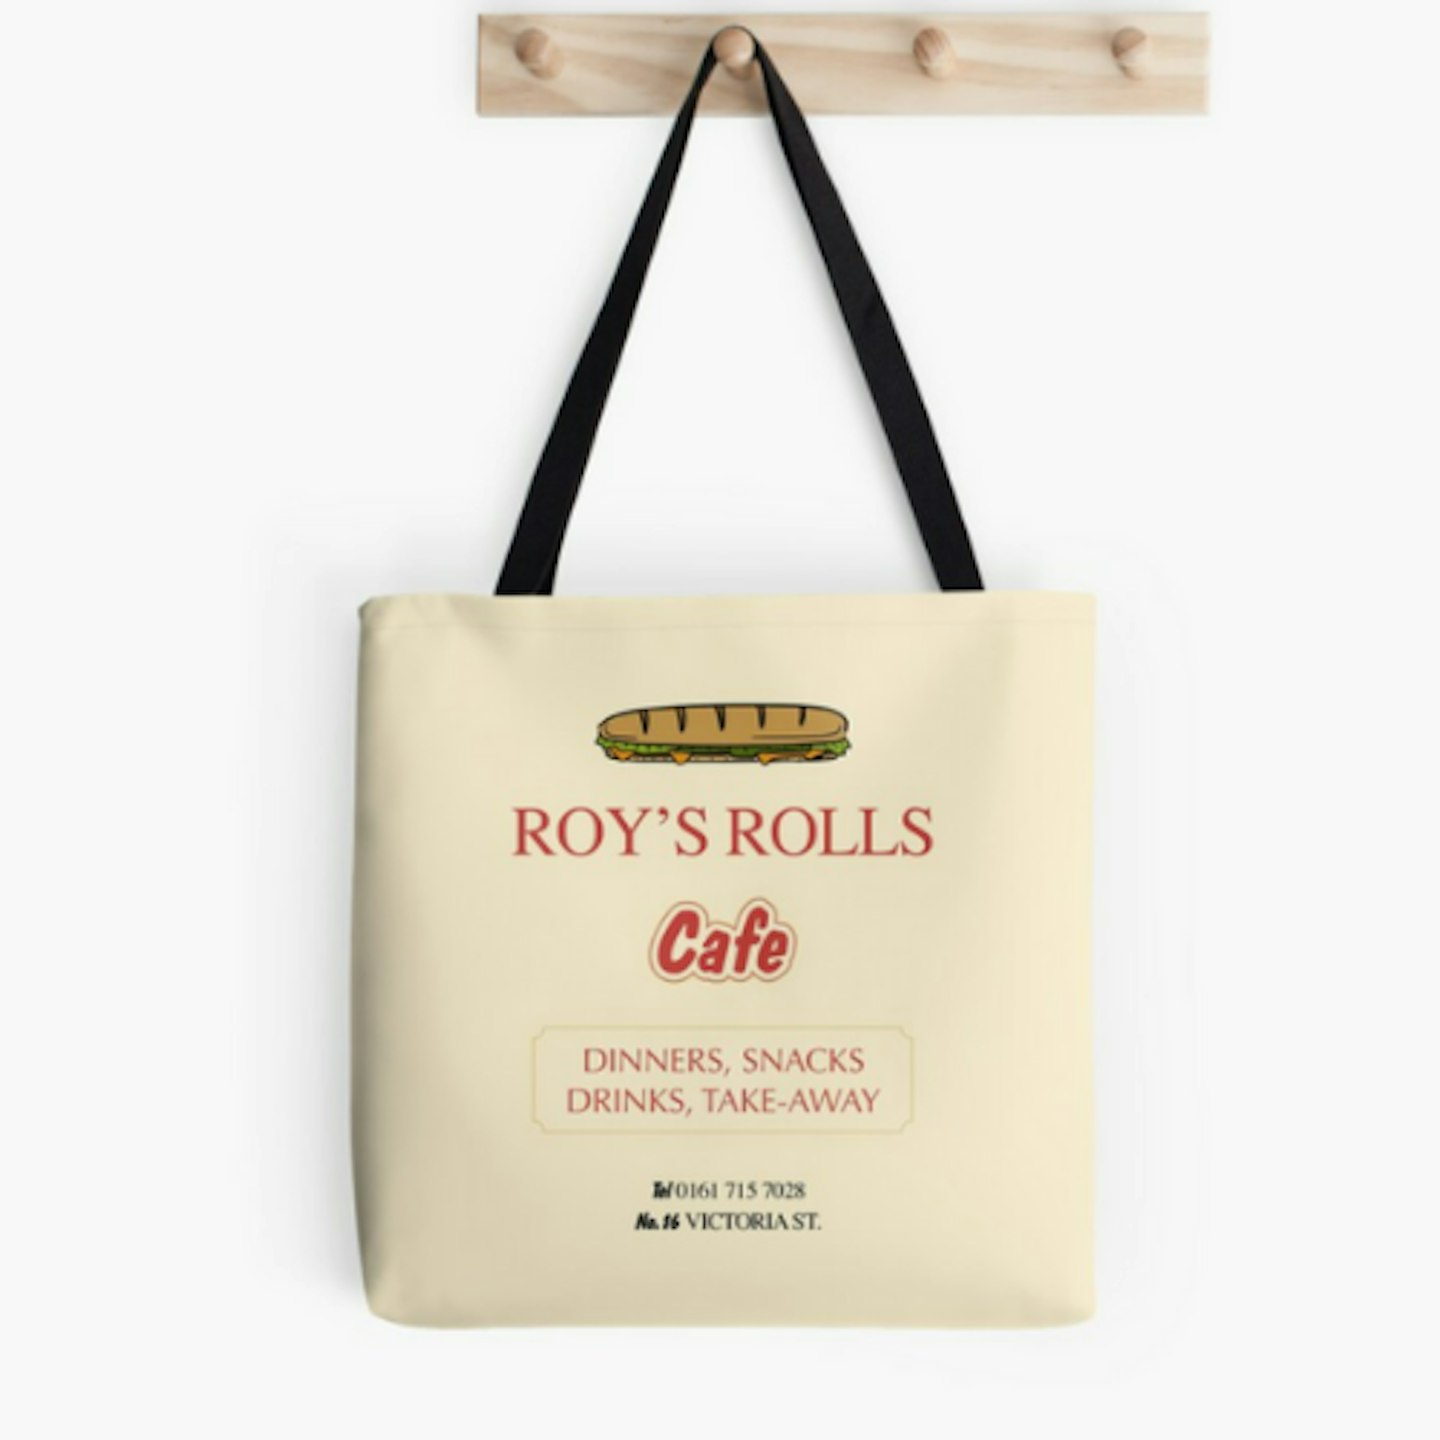 Roy's Rolls Cafe Tote Bag